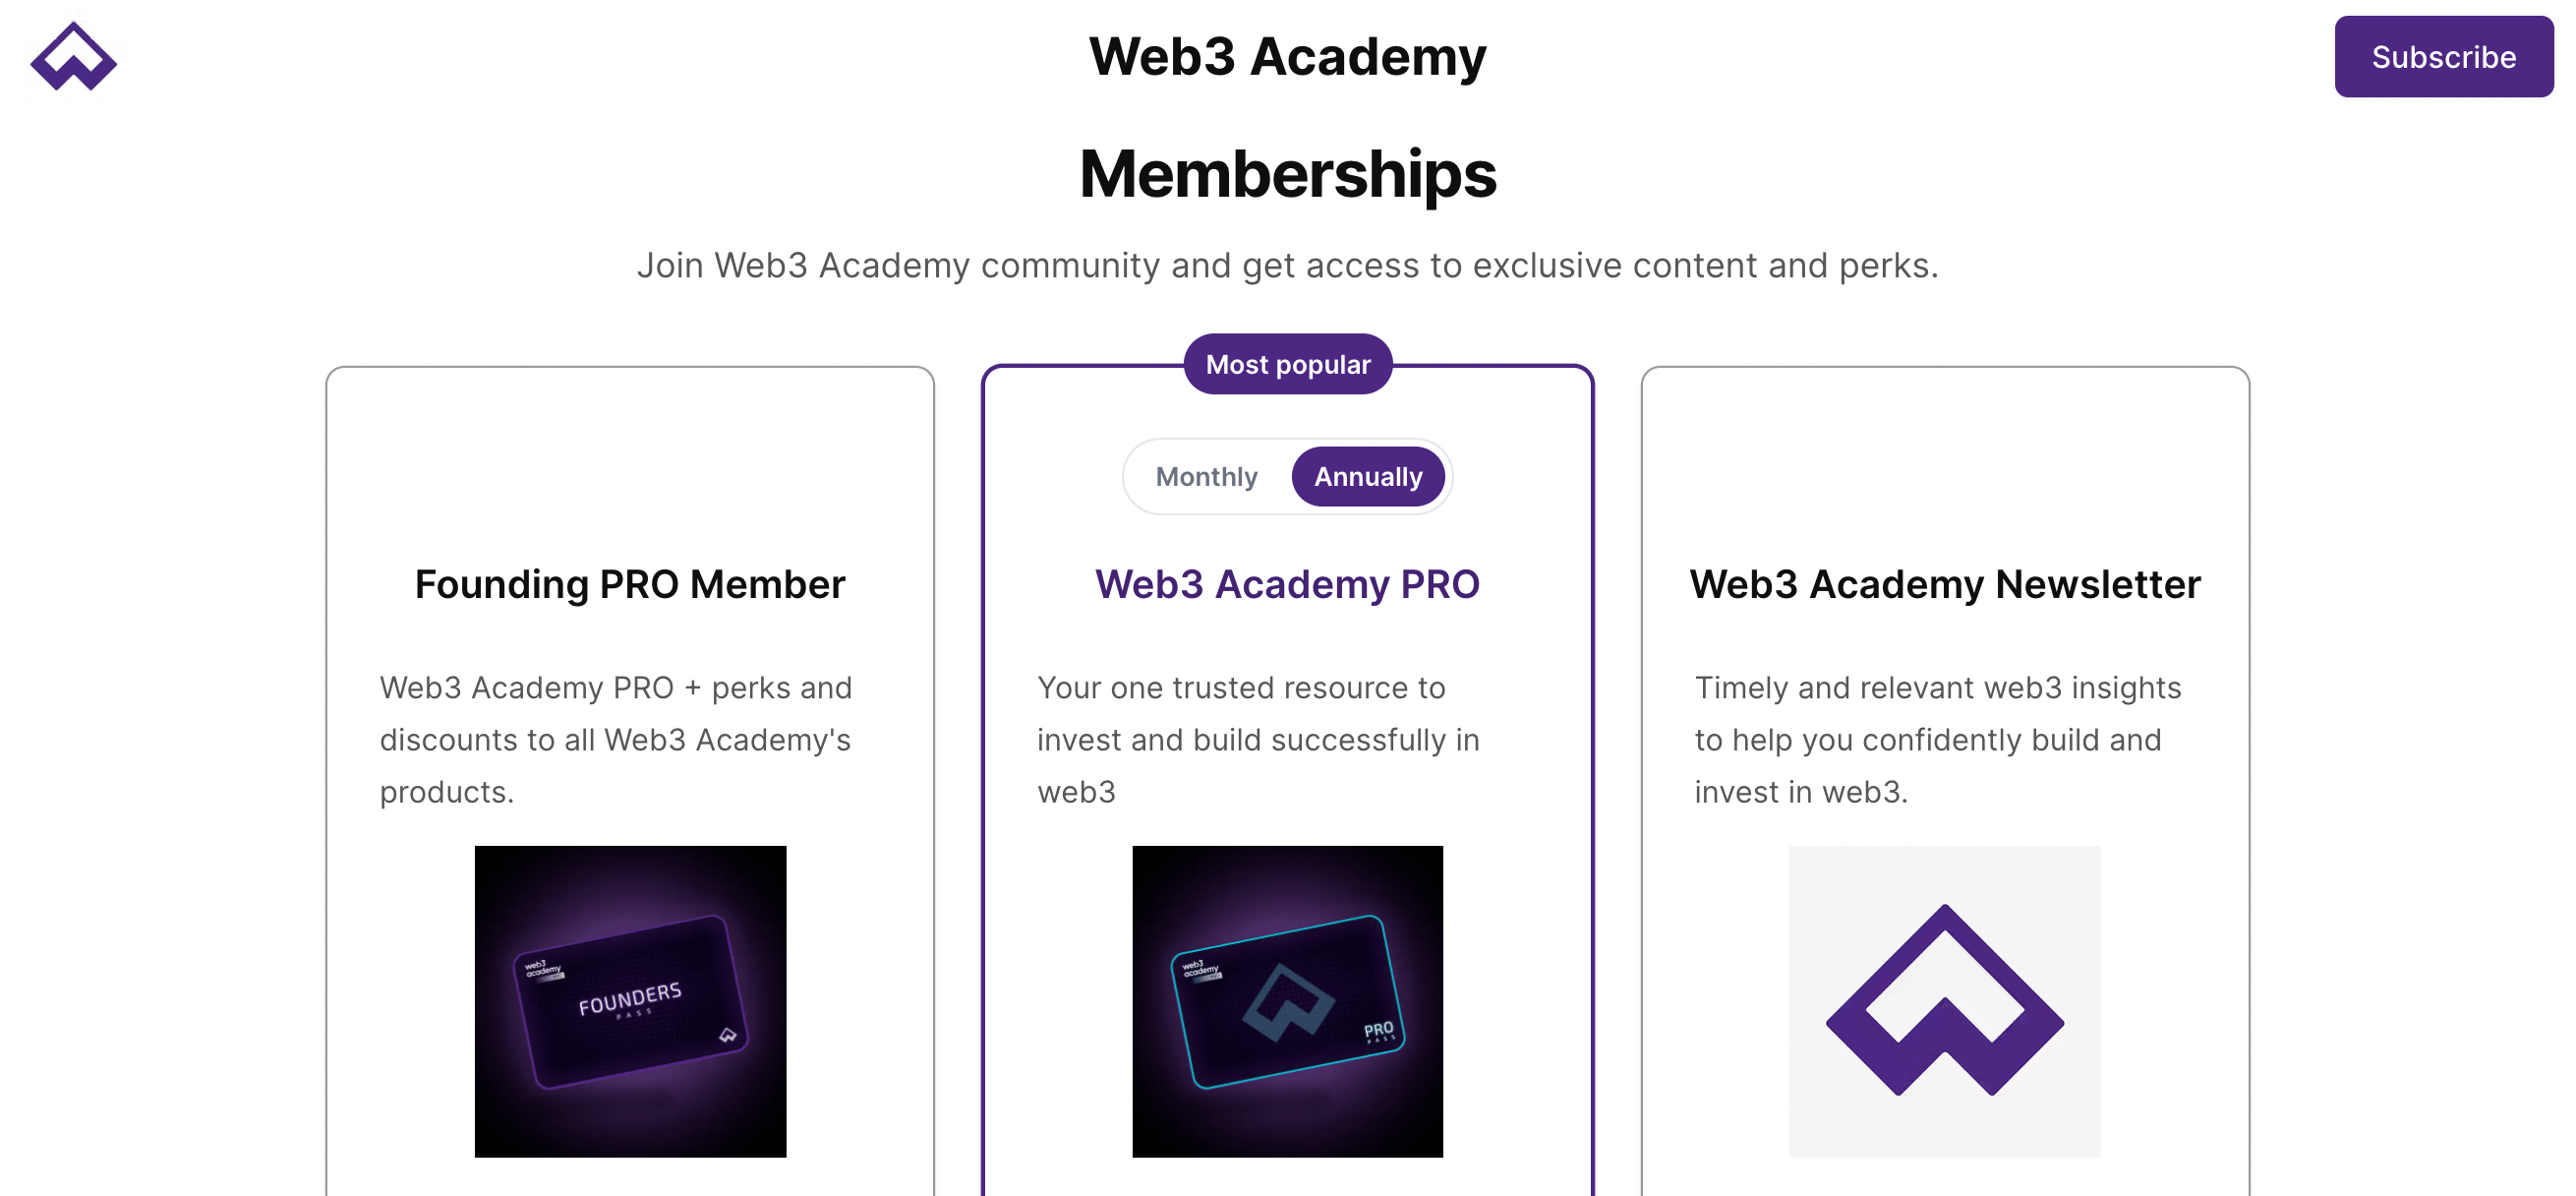 web3-academy-memberships